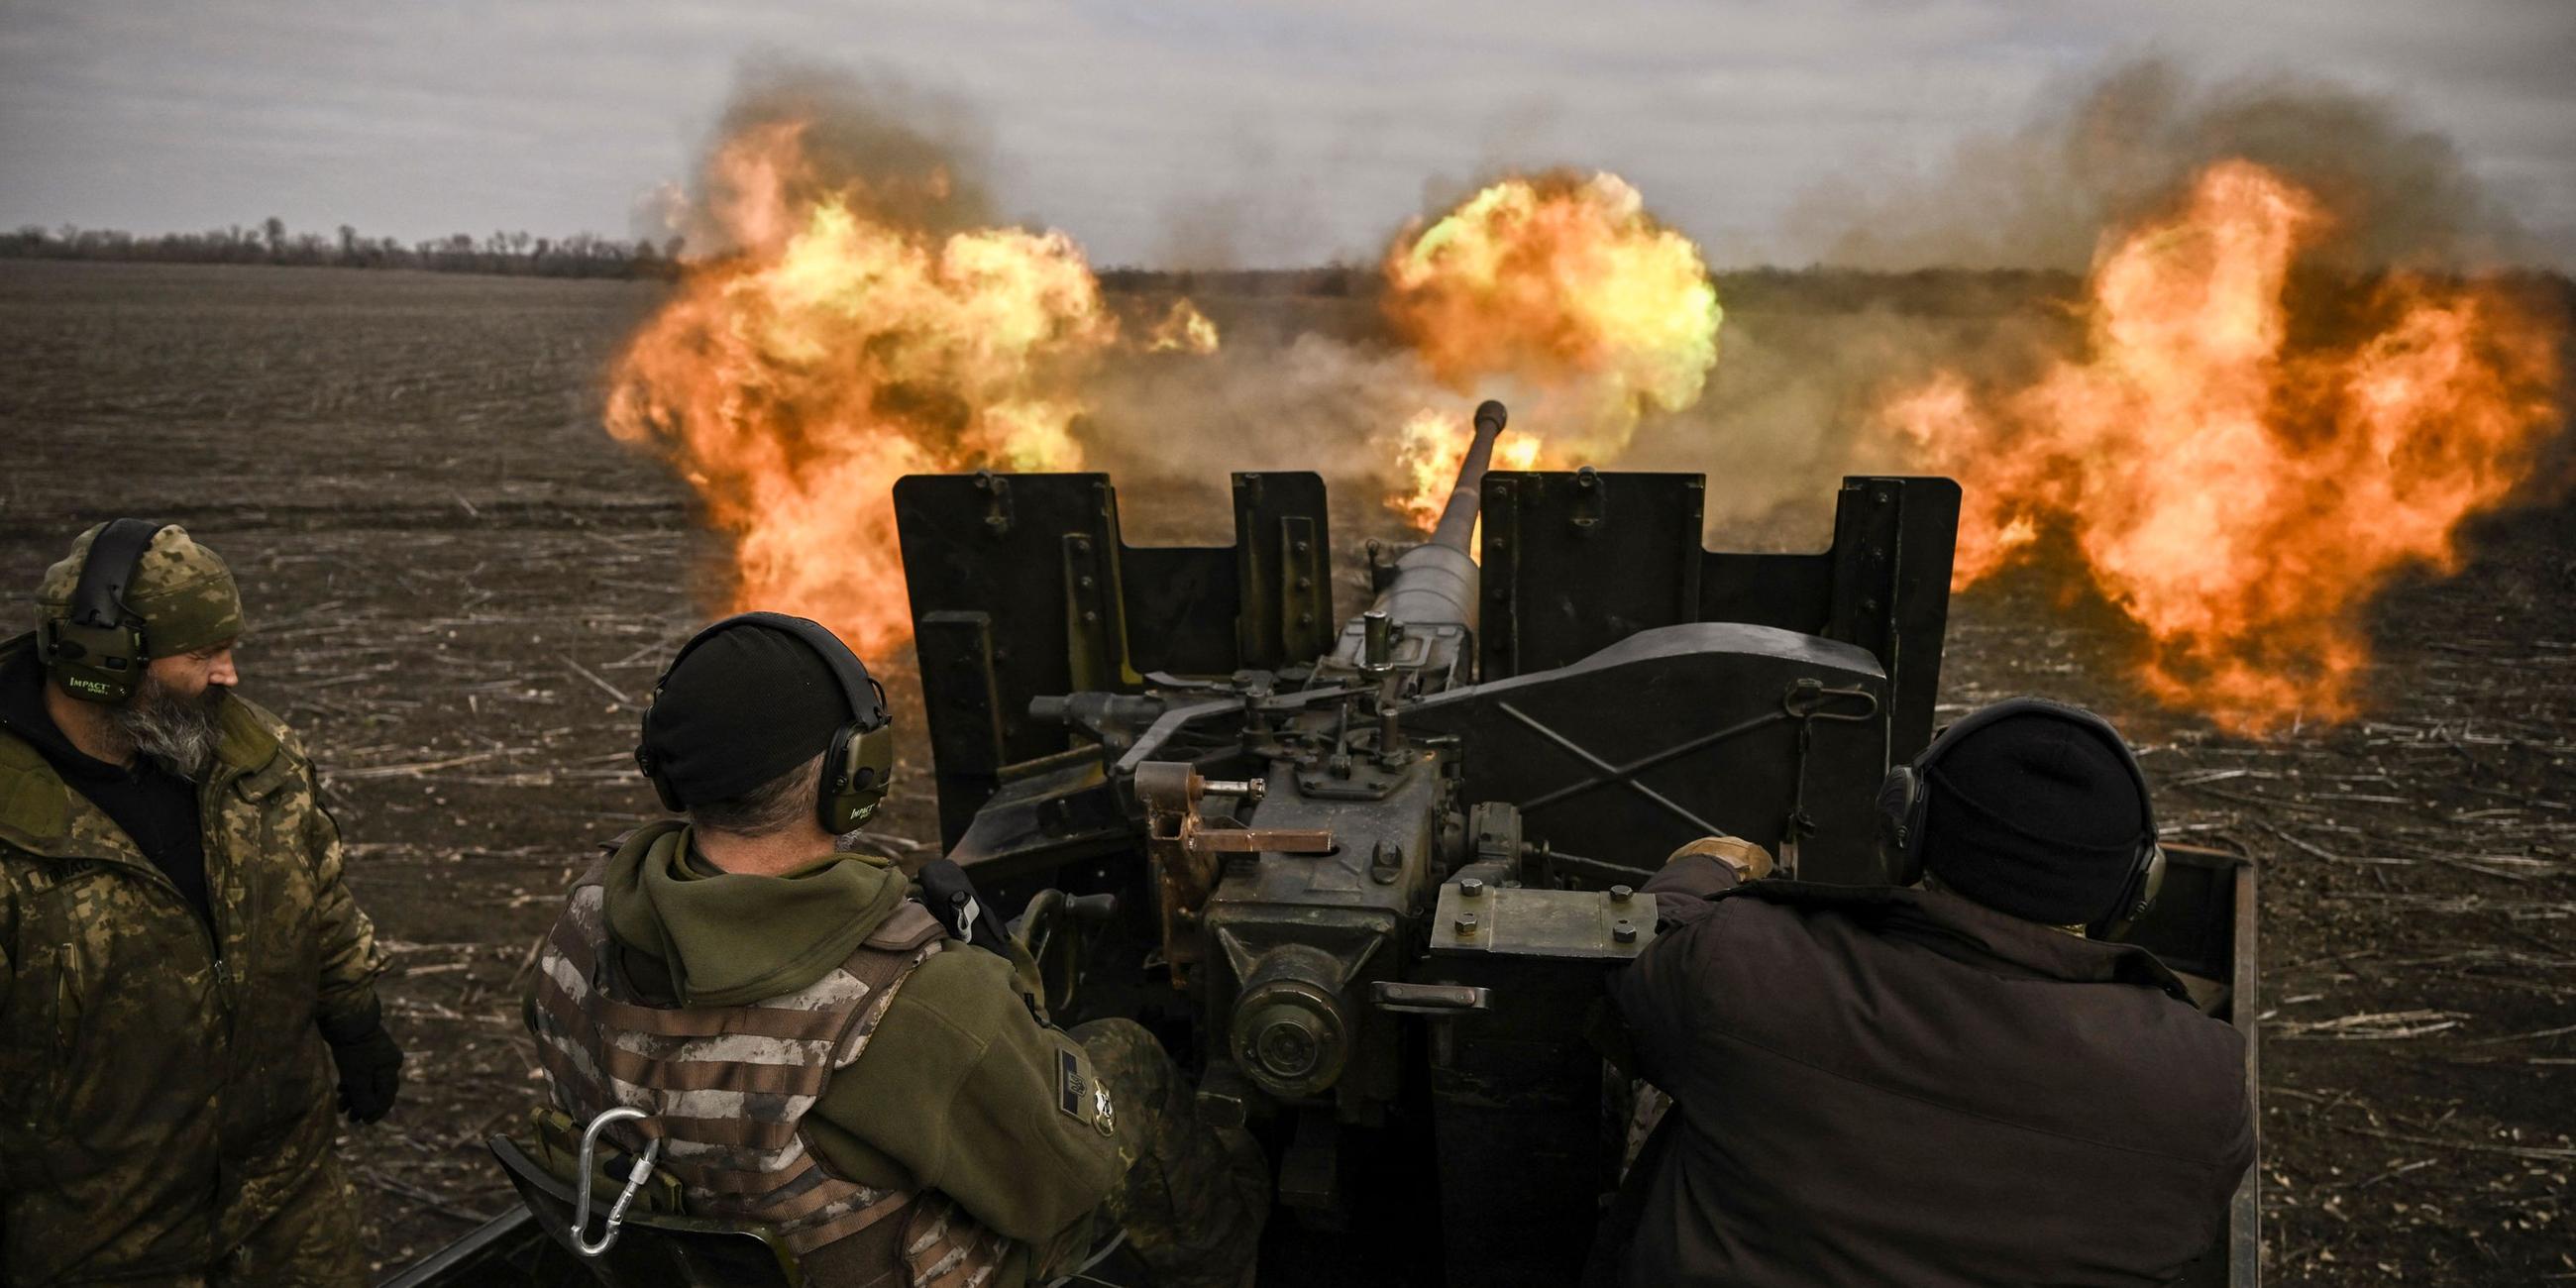 Ukrainische Soldaten feuern am 20. 03. 2023 inmitten der russischen Invasion in der Ukraine mit einem S60-Flugabwehrgeschütz auf russische Stellungen in der Nähe von Bachmut. 